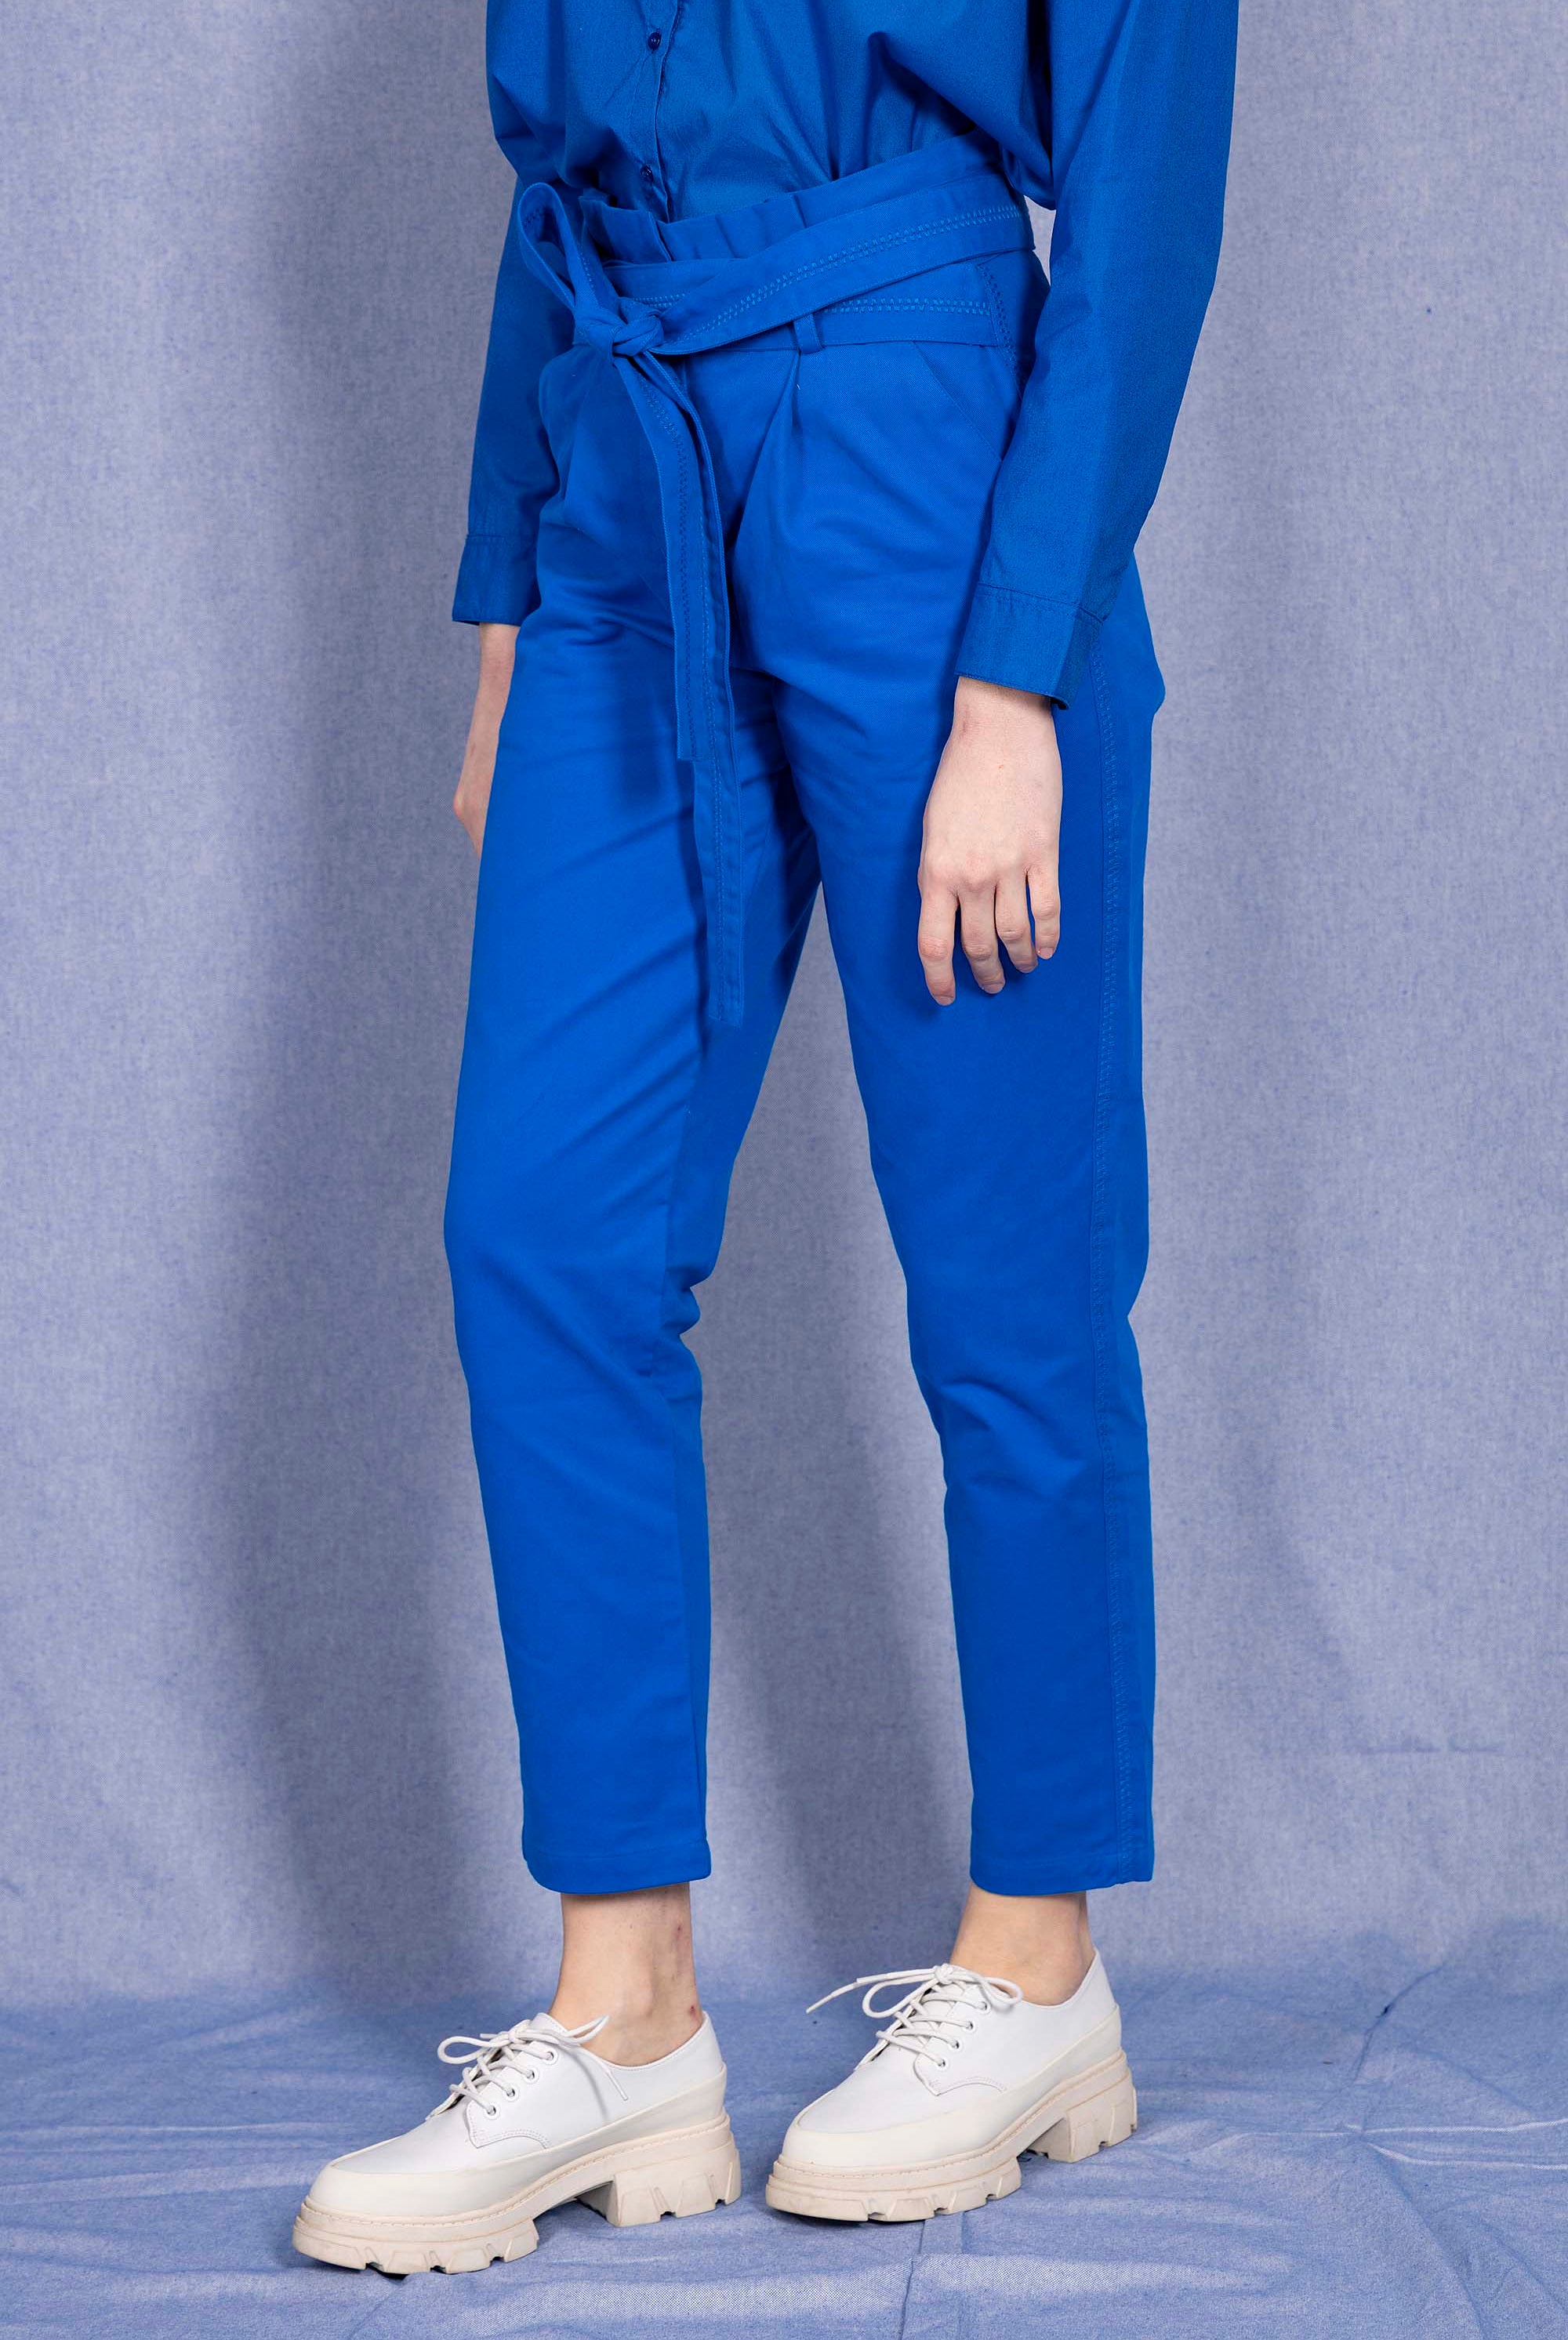 Pantalon Calipso Bleu Saphir parfaite alternative aux jeans, les pantalons en coton Misericordia sont uniques et confortables